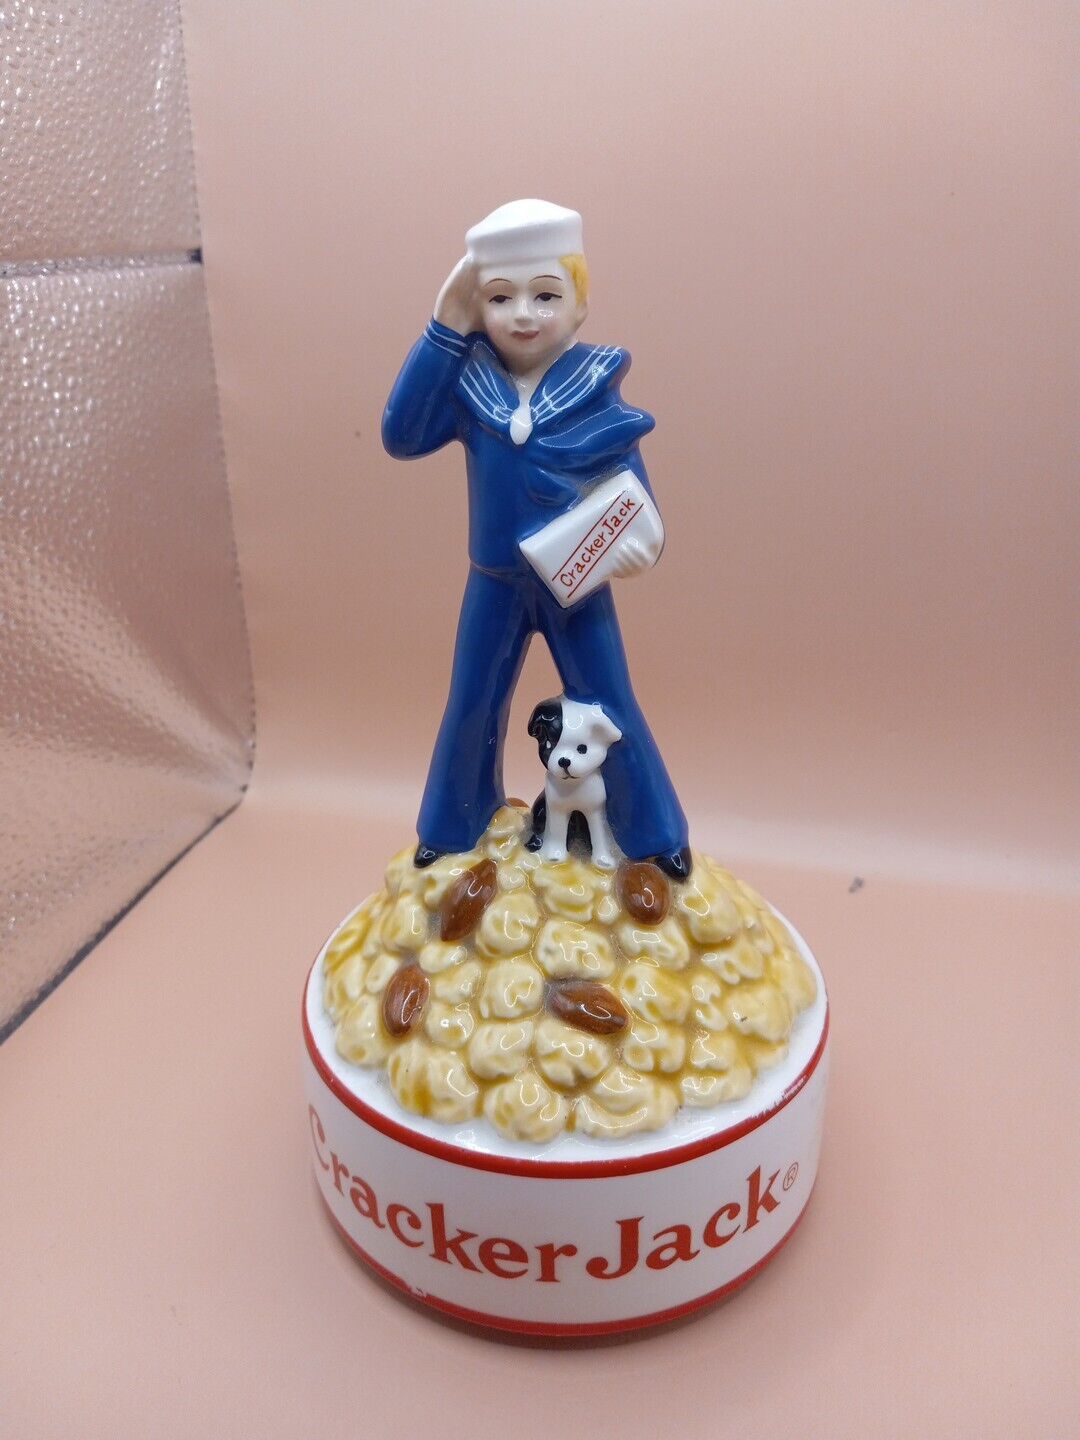 Vintage Cracker Jack Music Box Registered TM Of Borden Inc. Figure Stands 8 Inch